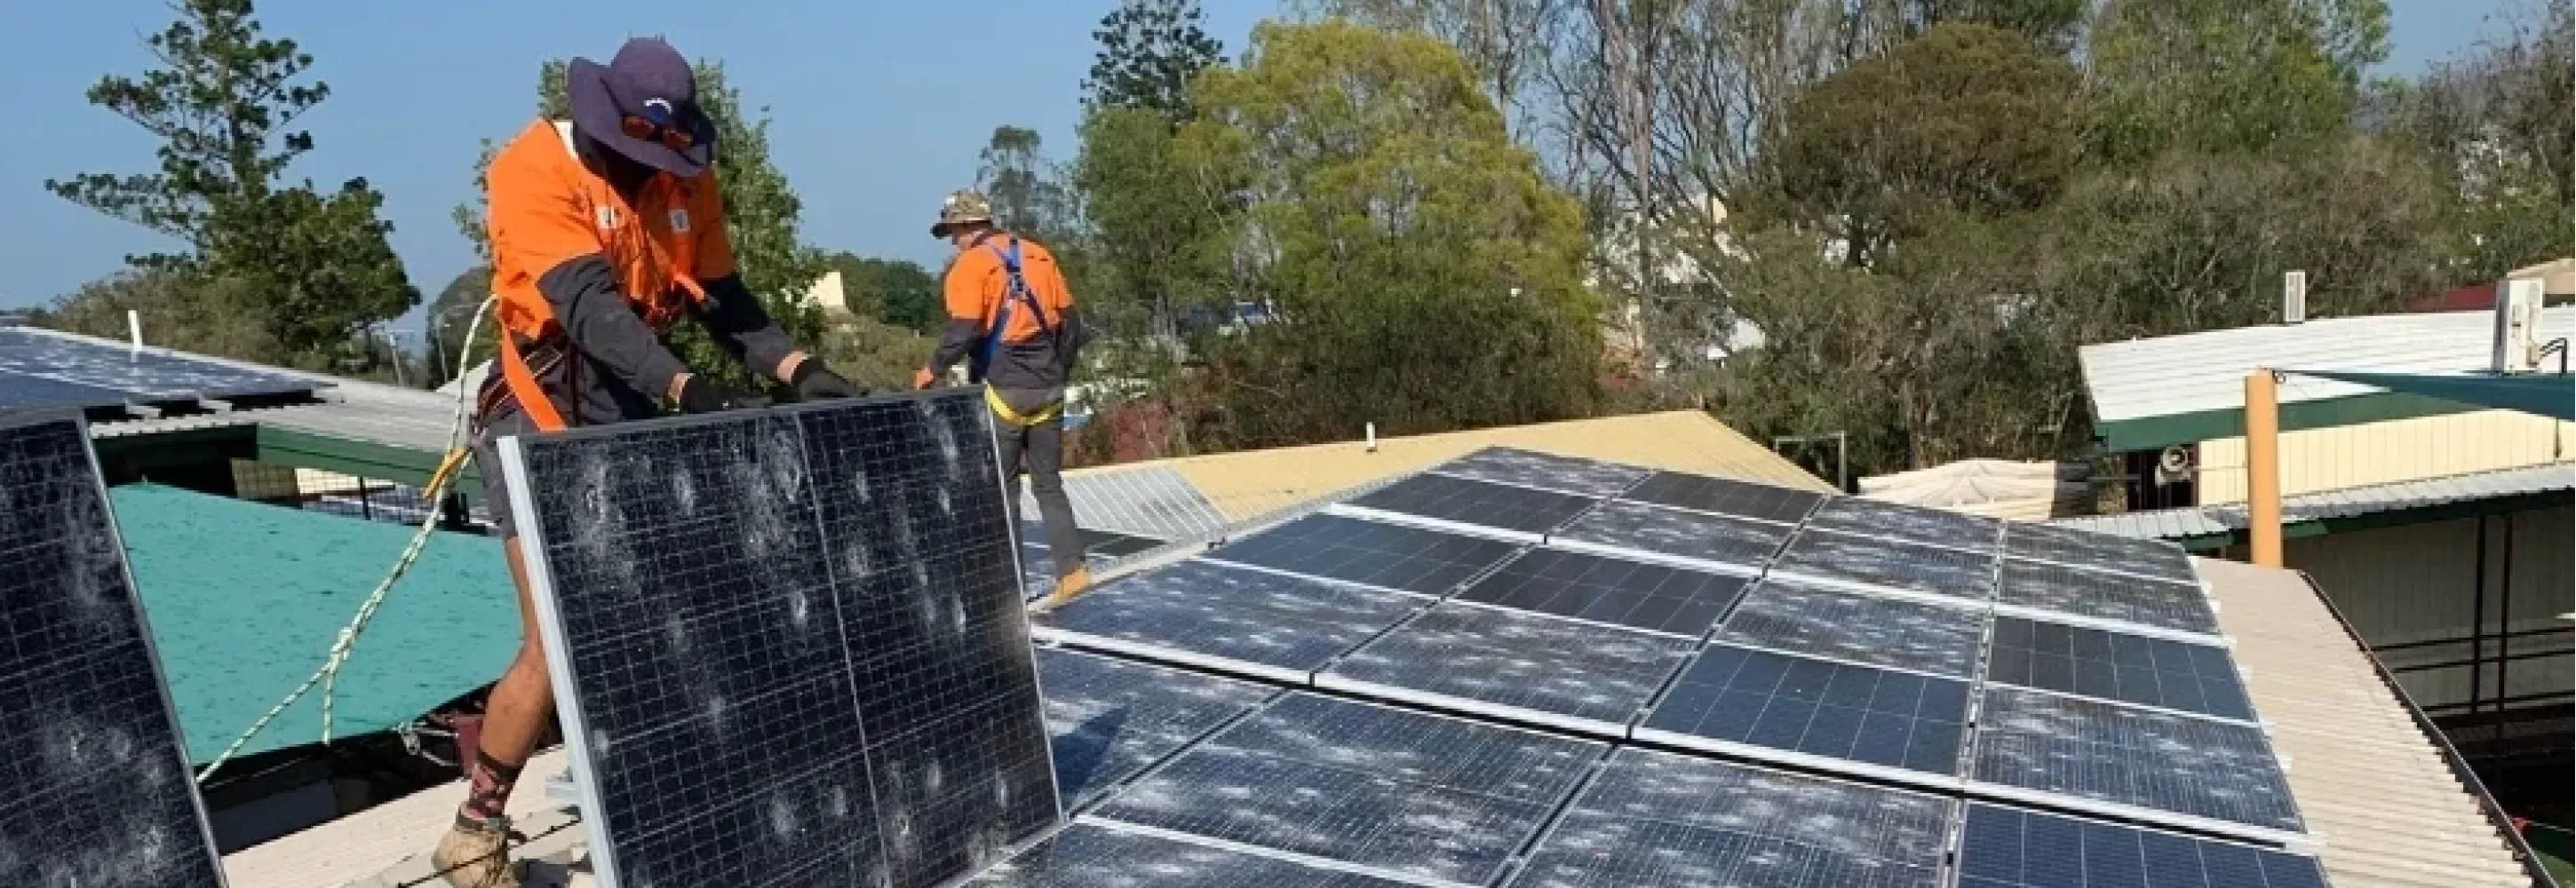 operai su tetto per manutenzione dei pannelli solari per la protezione contro la grandine